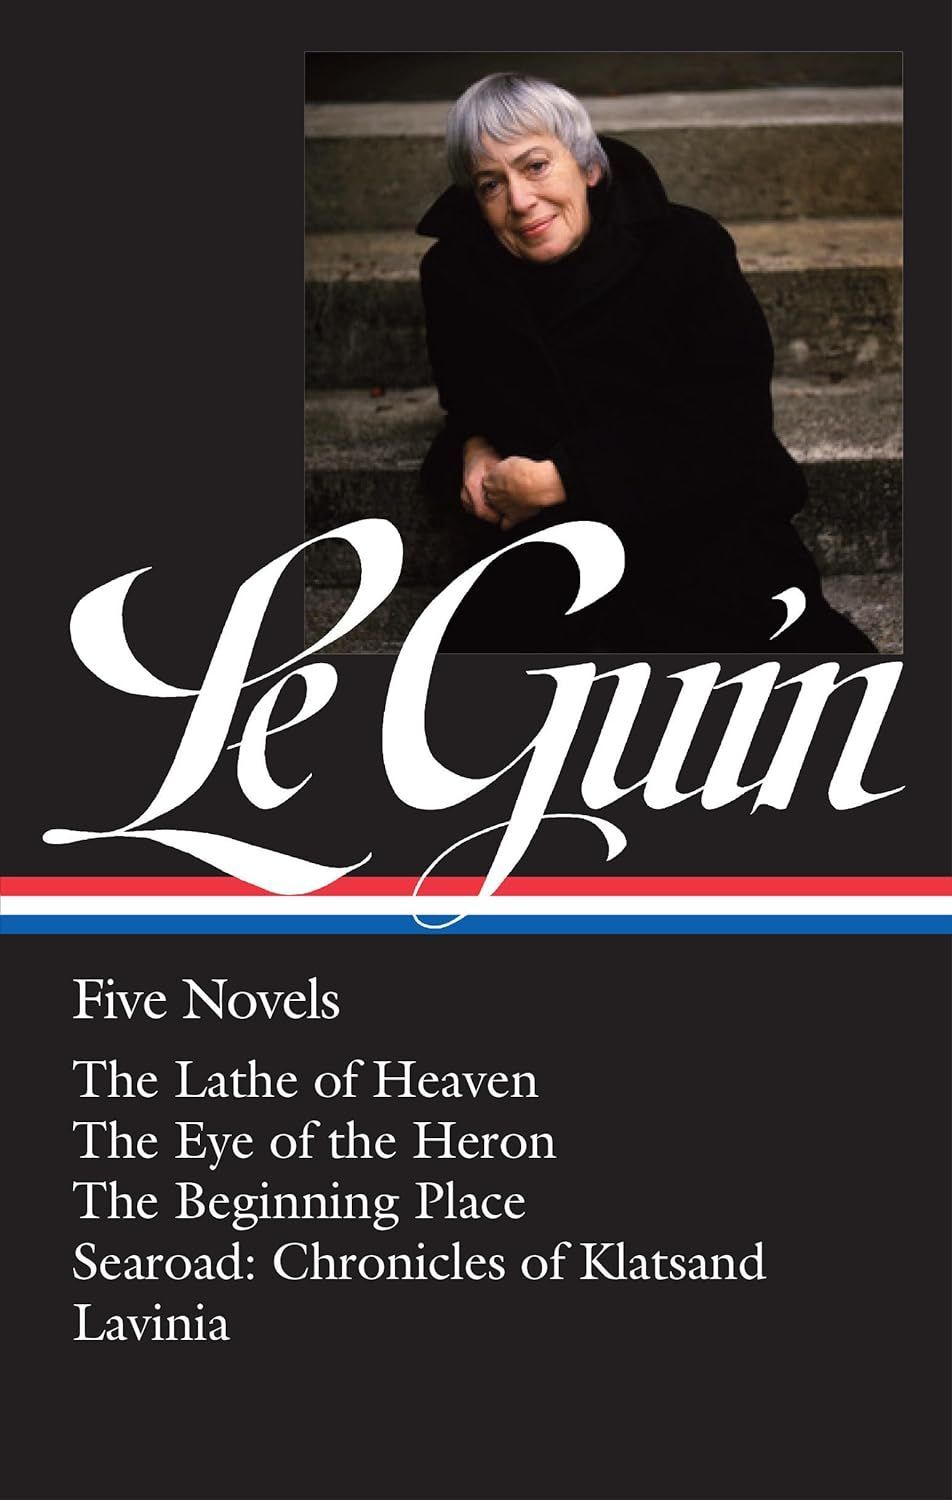 Through a Herne’s Eye: On Ursula K. Le Guin’s “Five Novels”